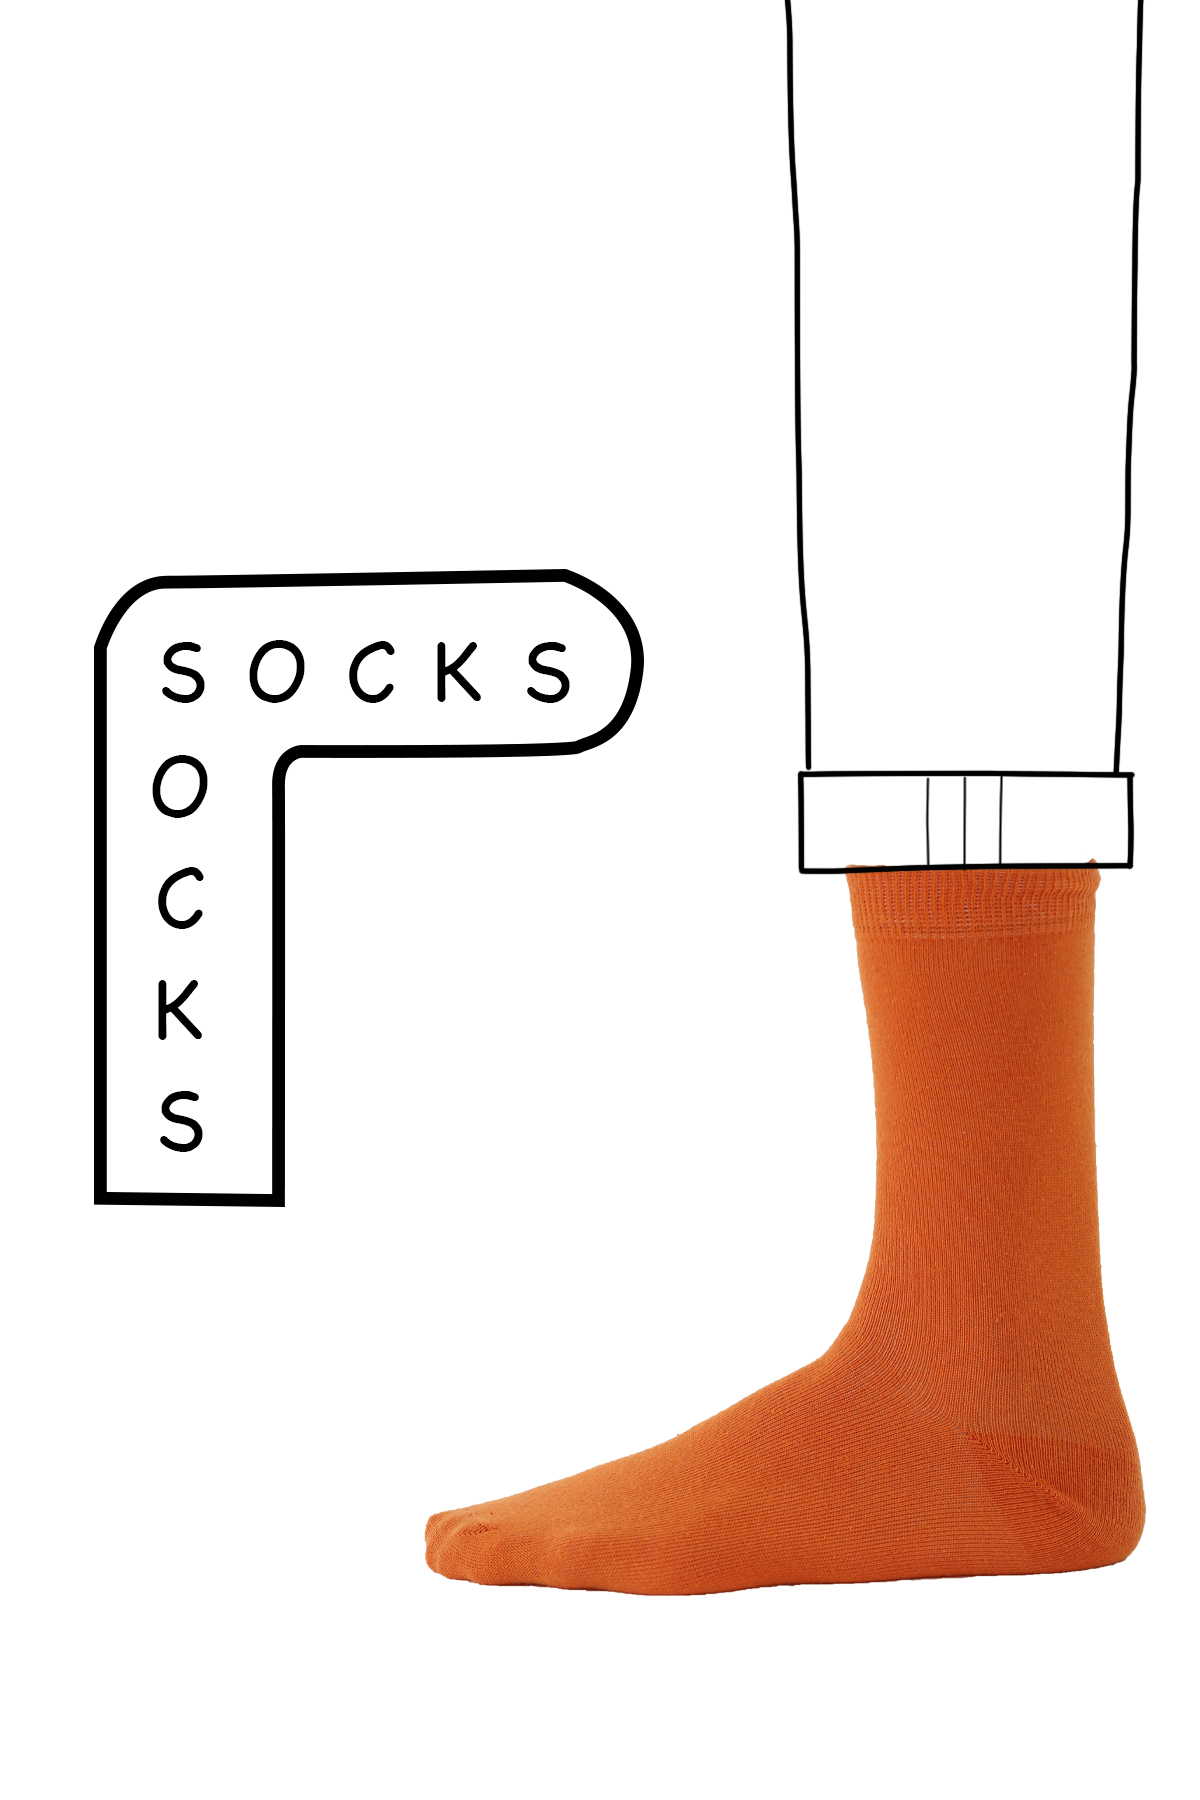 Socket Socks